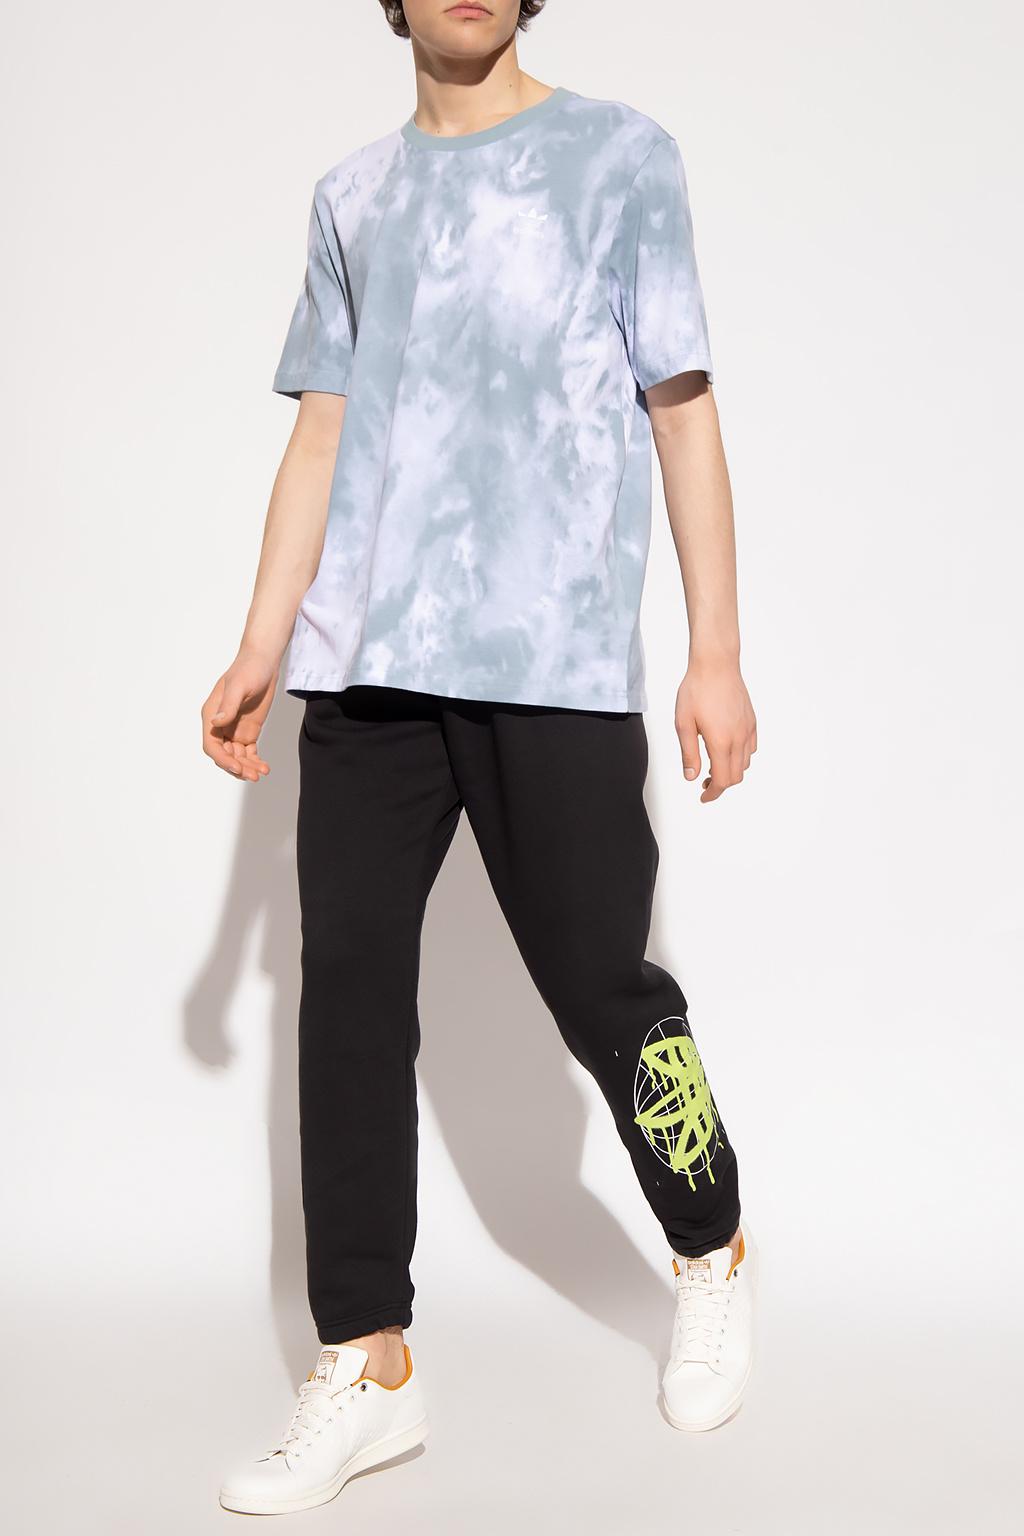 overhandigen Ewell Geletterdheid adidas Originals Tie-dye T-shirt in Gray for Men | Lyst